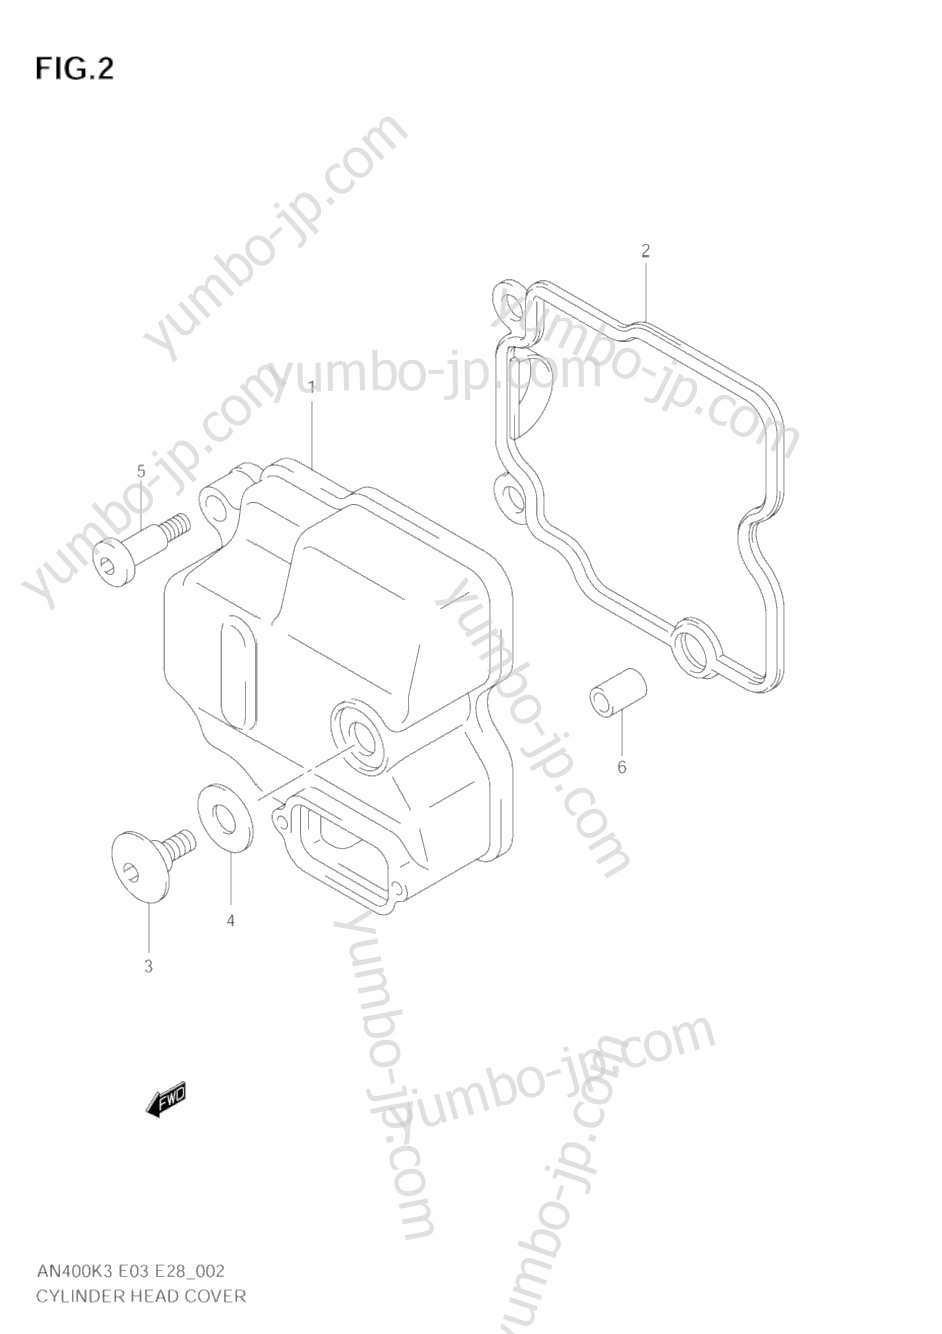 Крышка головки блока цилиндров для скутеров SUZUKI Burgman (AN400S) 2006 г.